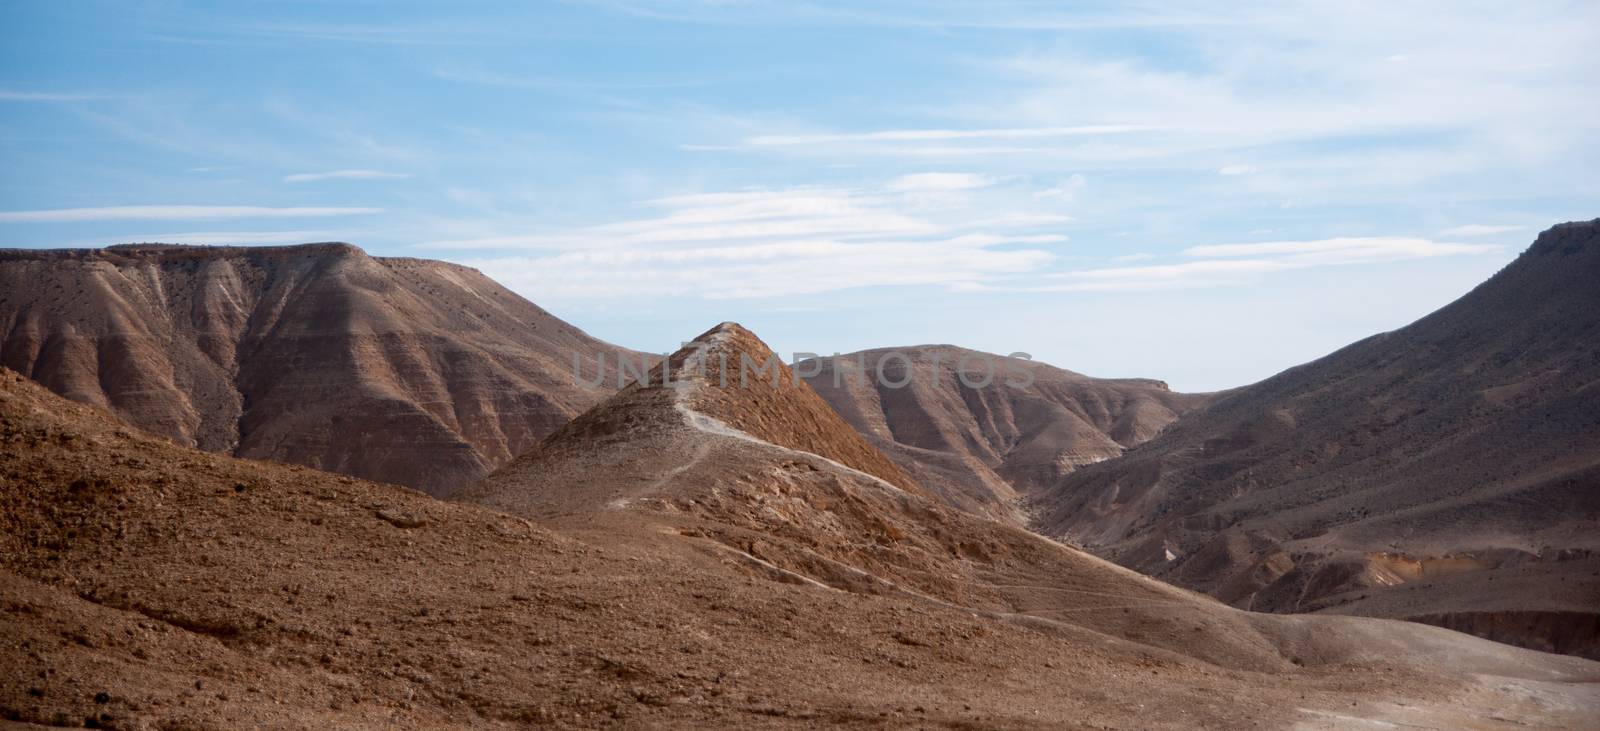 Travel in Negev desert, Israel by javax